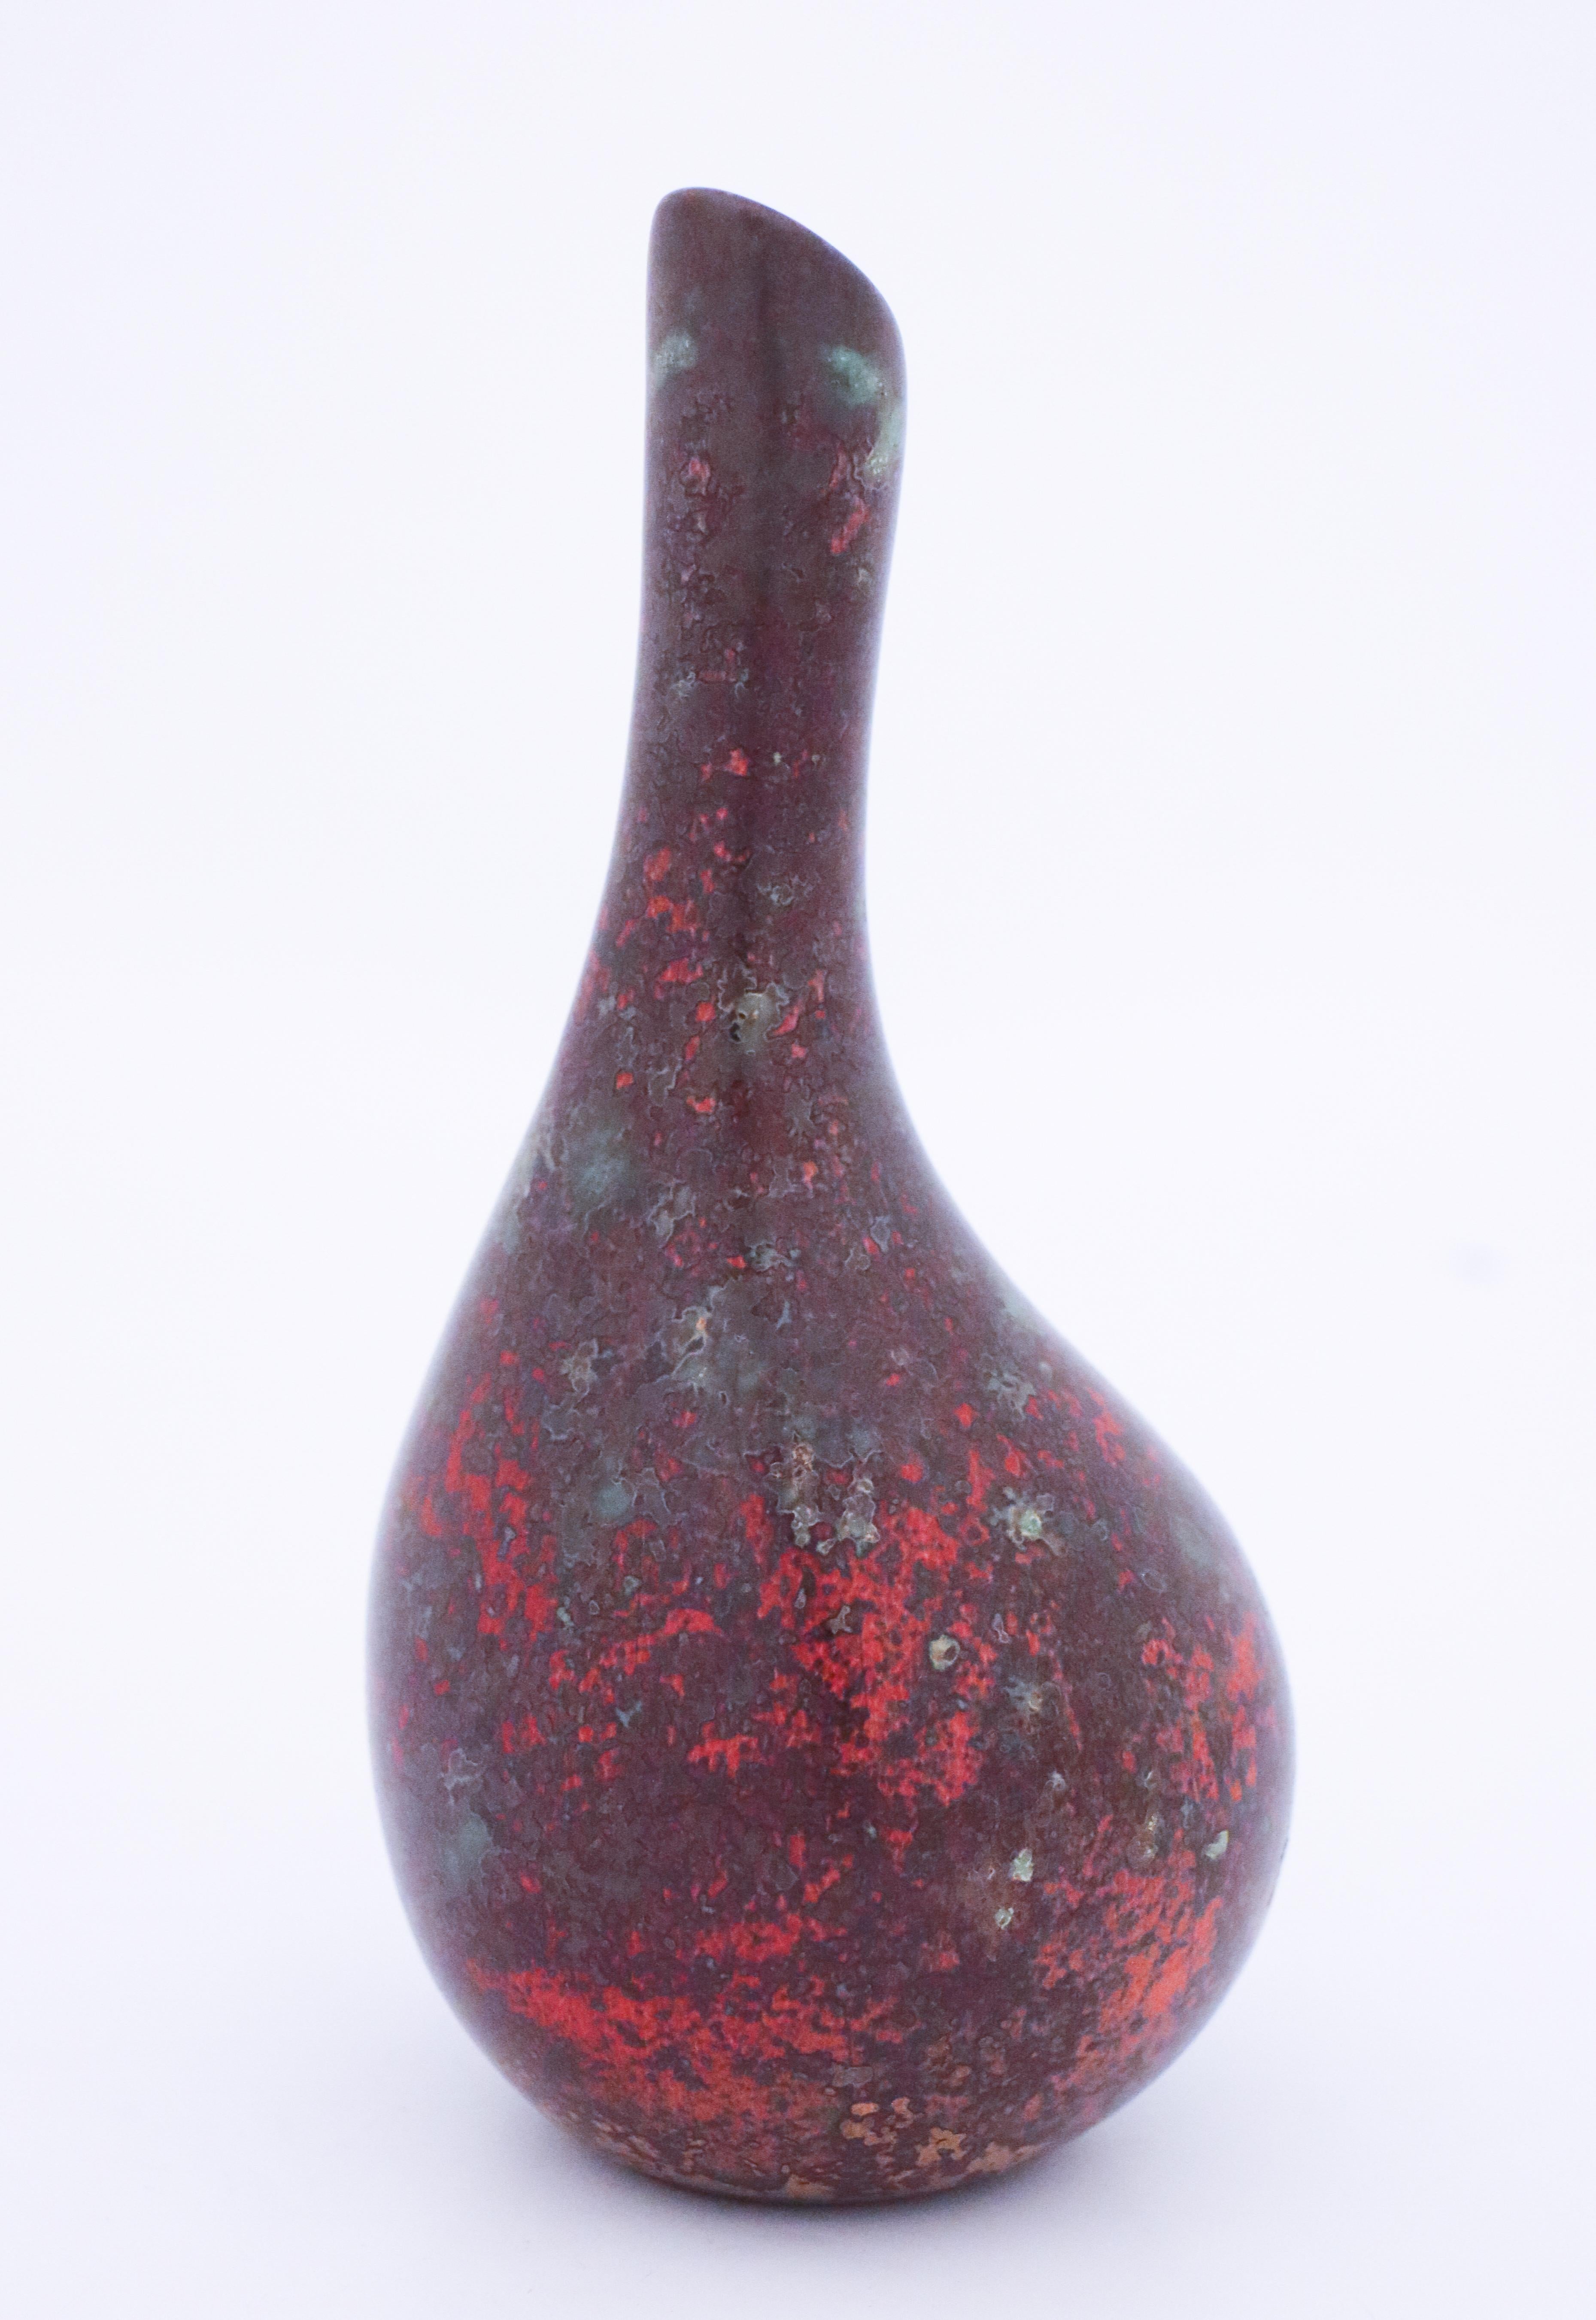 Eine rote Vase, entworfen von Hans Hedberg in seinem Atelier in Biot. Die Vase ist 18 cm hoch und in sehr gutem Zustand, abgesehen von einigen kleinen Flecken und Kratzern. 

Hans Hedberg (1917-2007) schwedischer Keramiker, der sein Atelier in